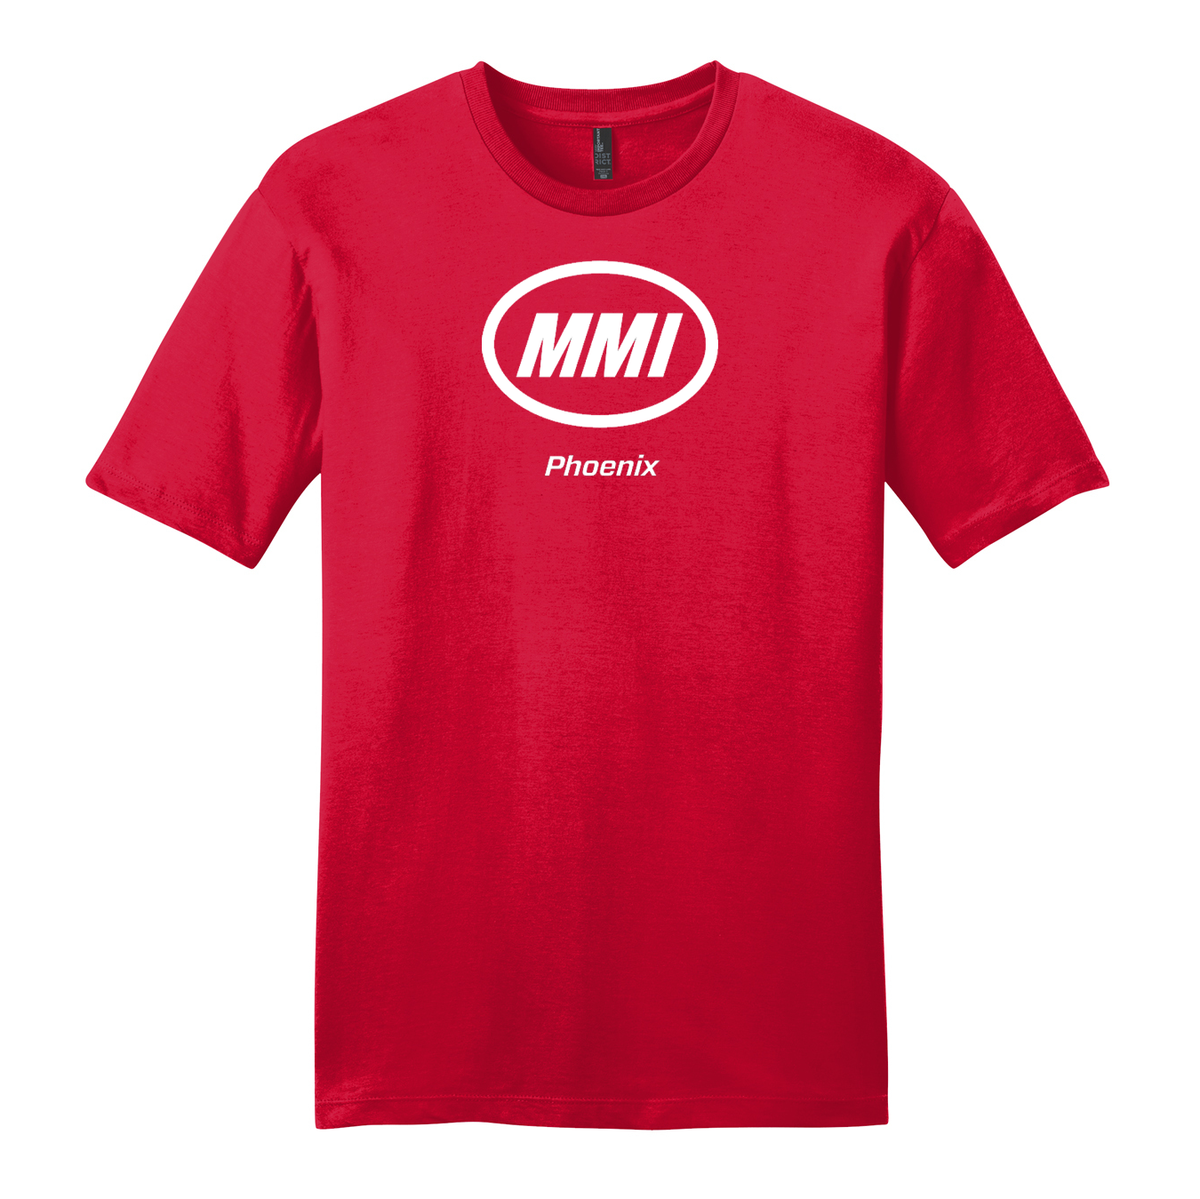 MMI Phoenix Campus T-Shirt